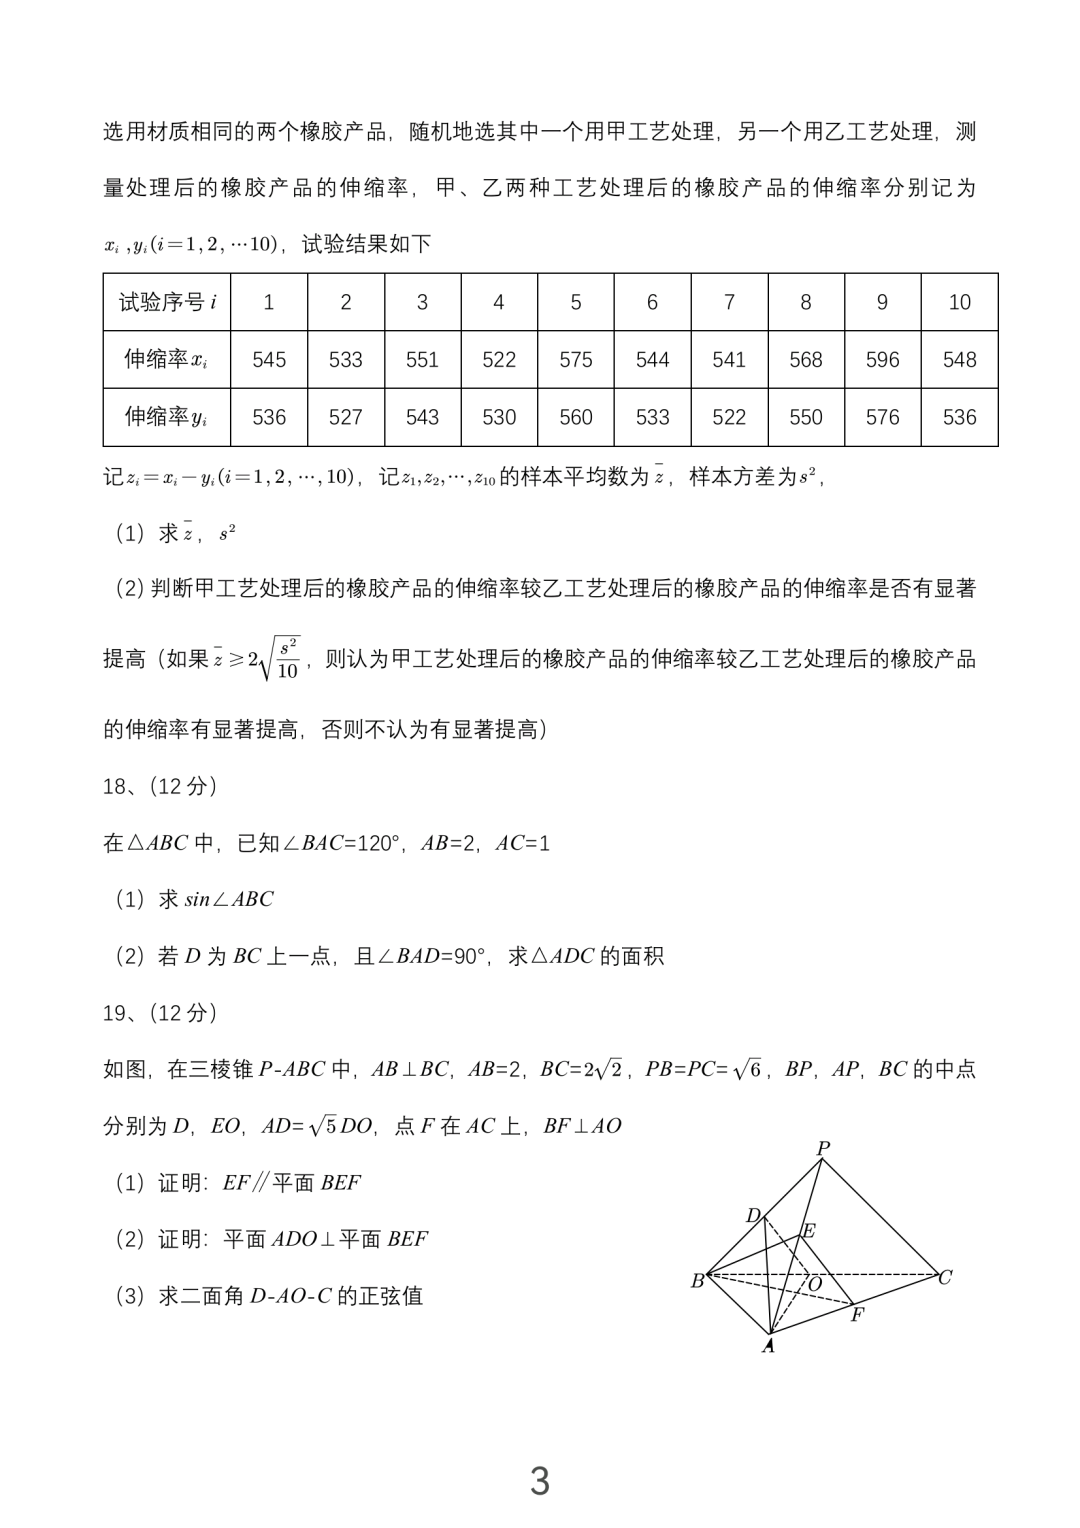 2023青海高考数学试题及答案(乙卷)